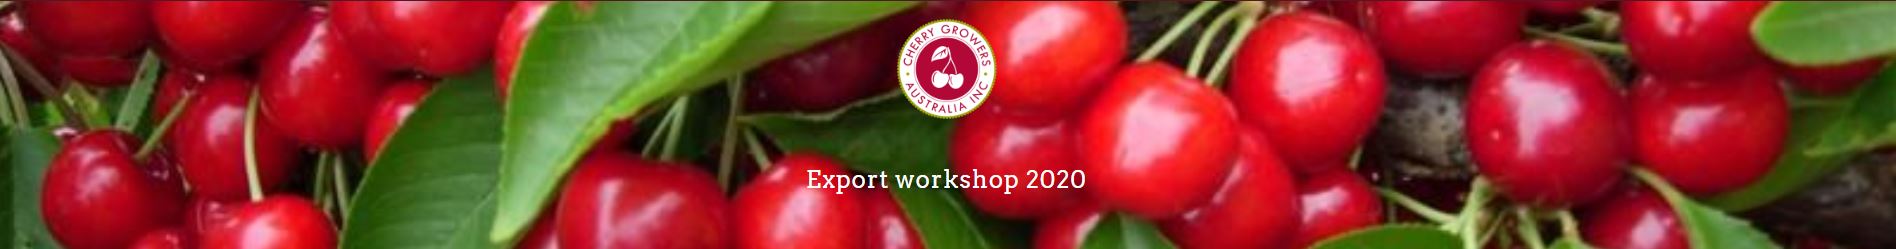 Cherry Growers Australia Export Workshop banner